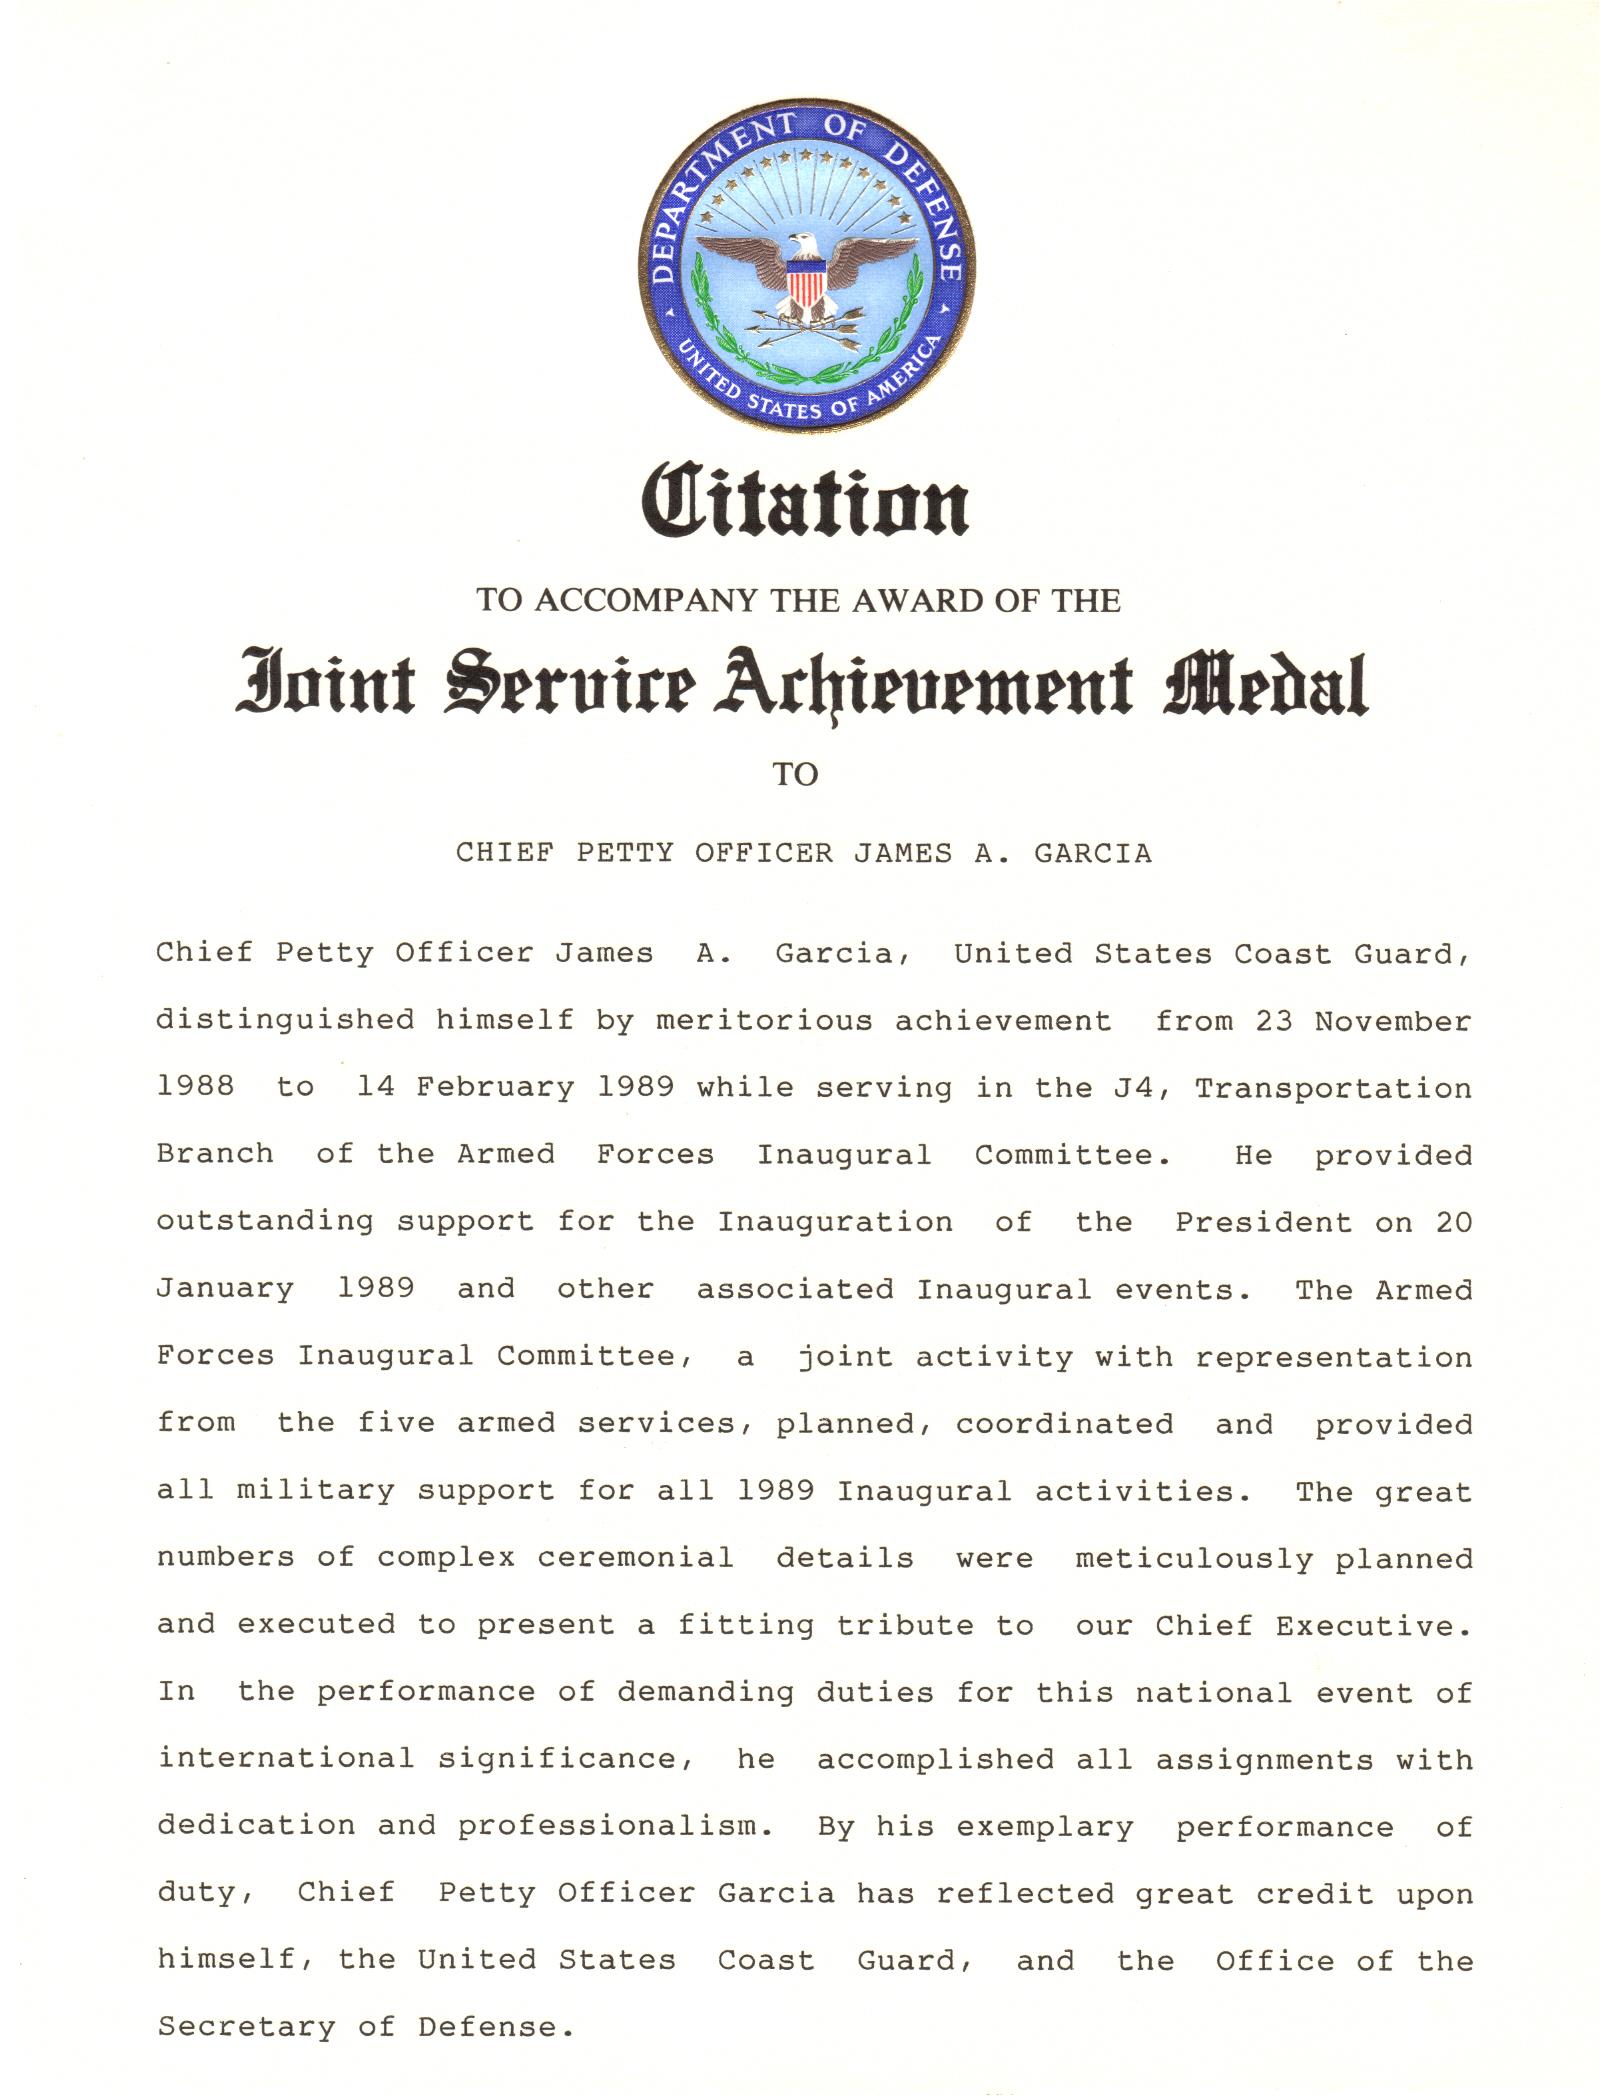 Joint Service Achievment Medal Citation